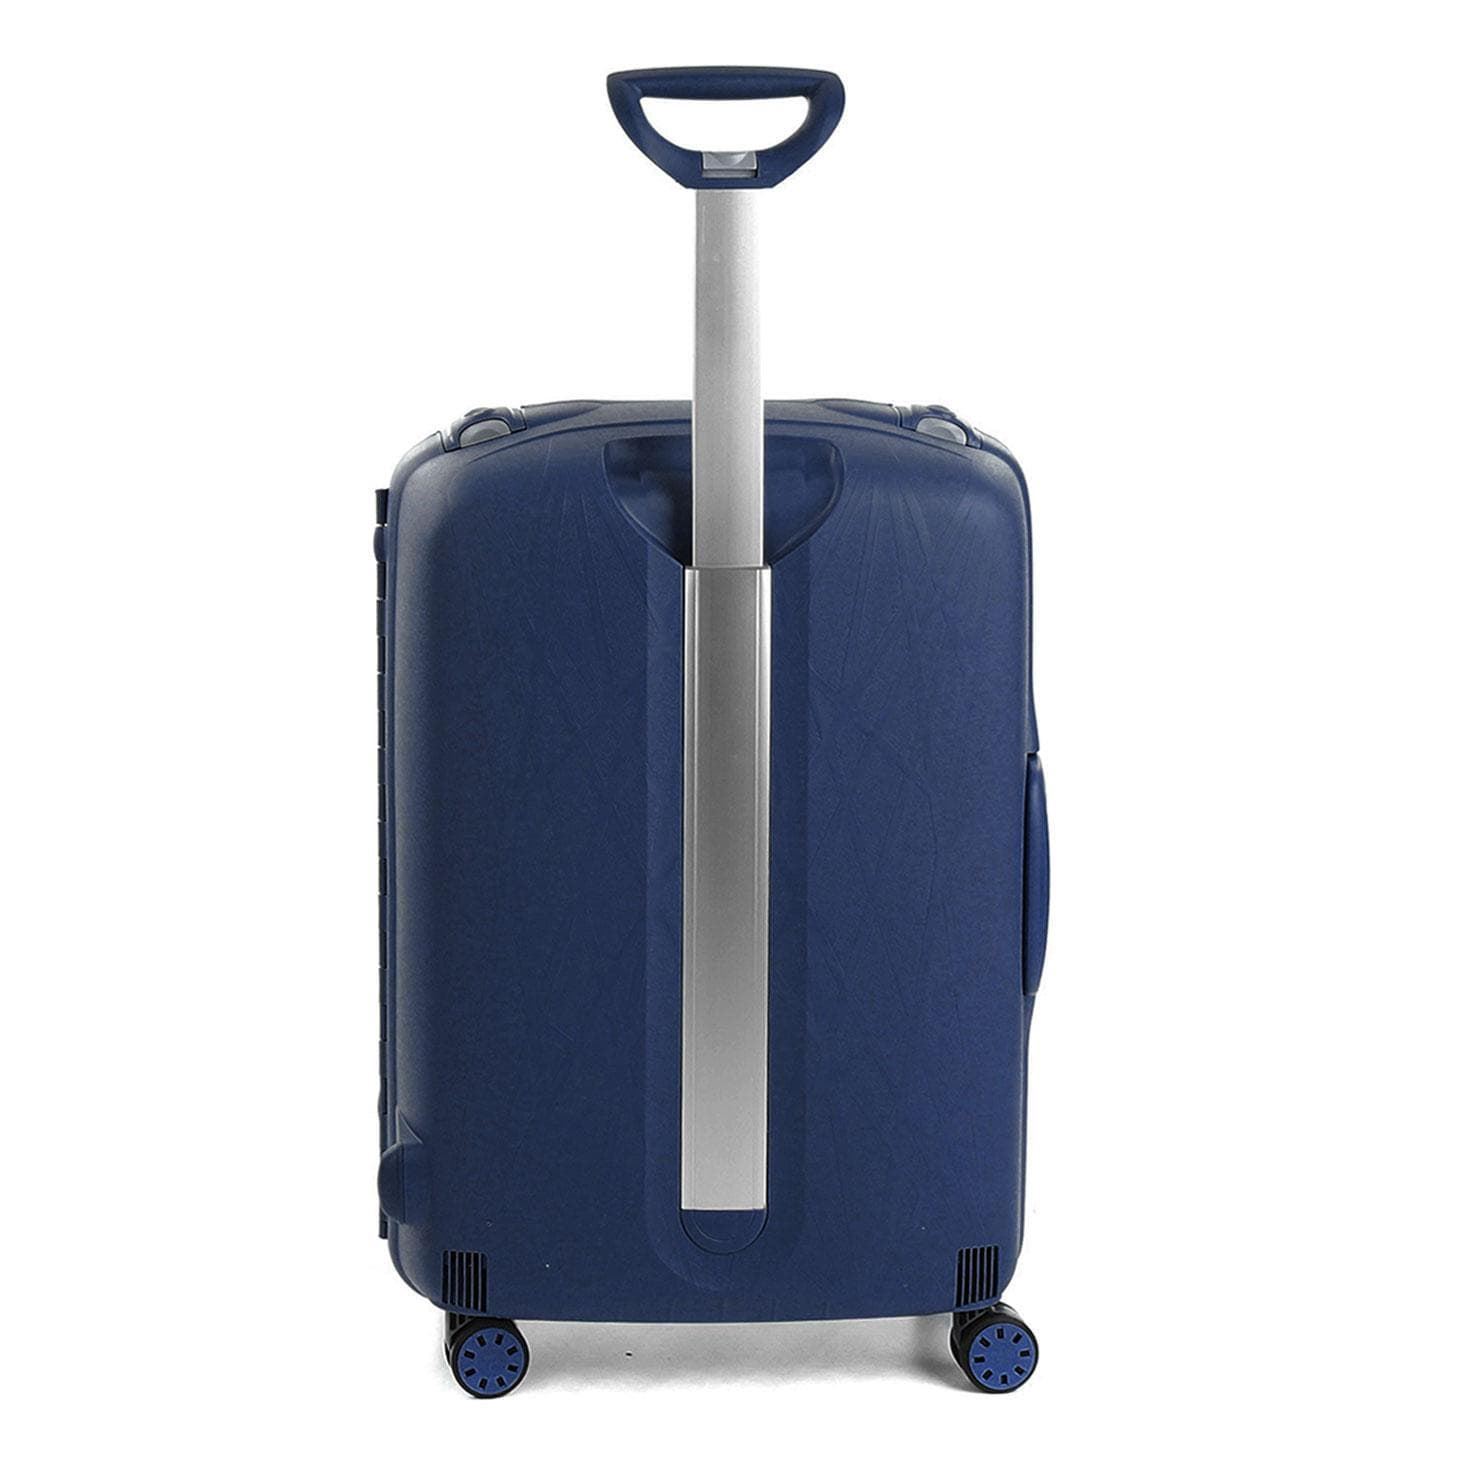 maleta mediana roncato light spinner 4 ruedas azul marino - Imagen 5